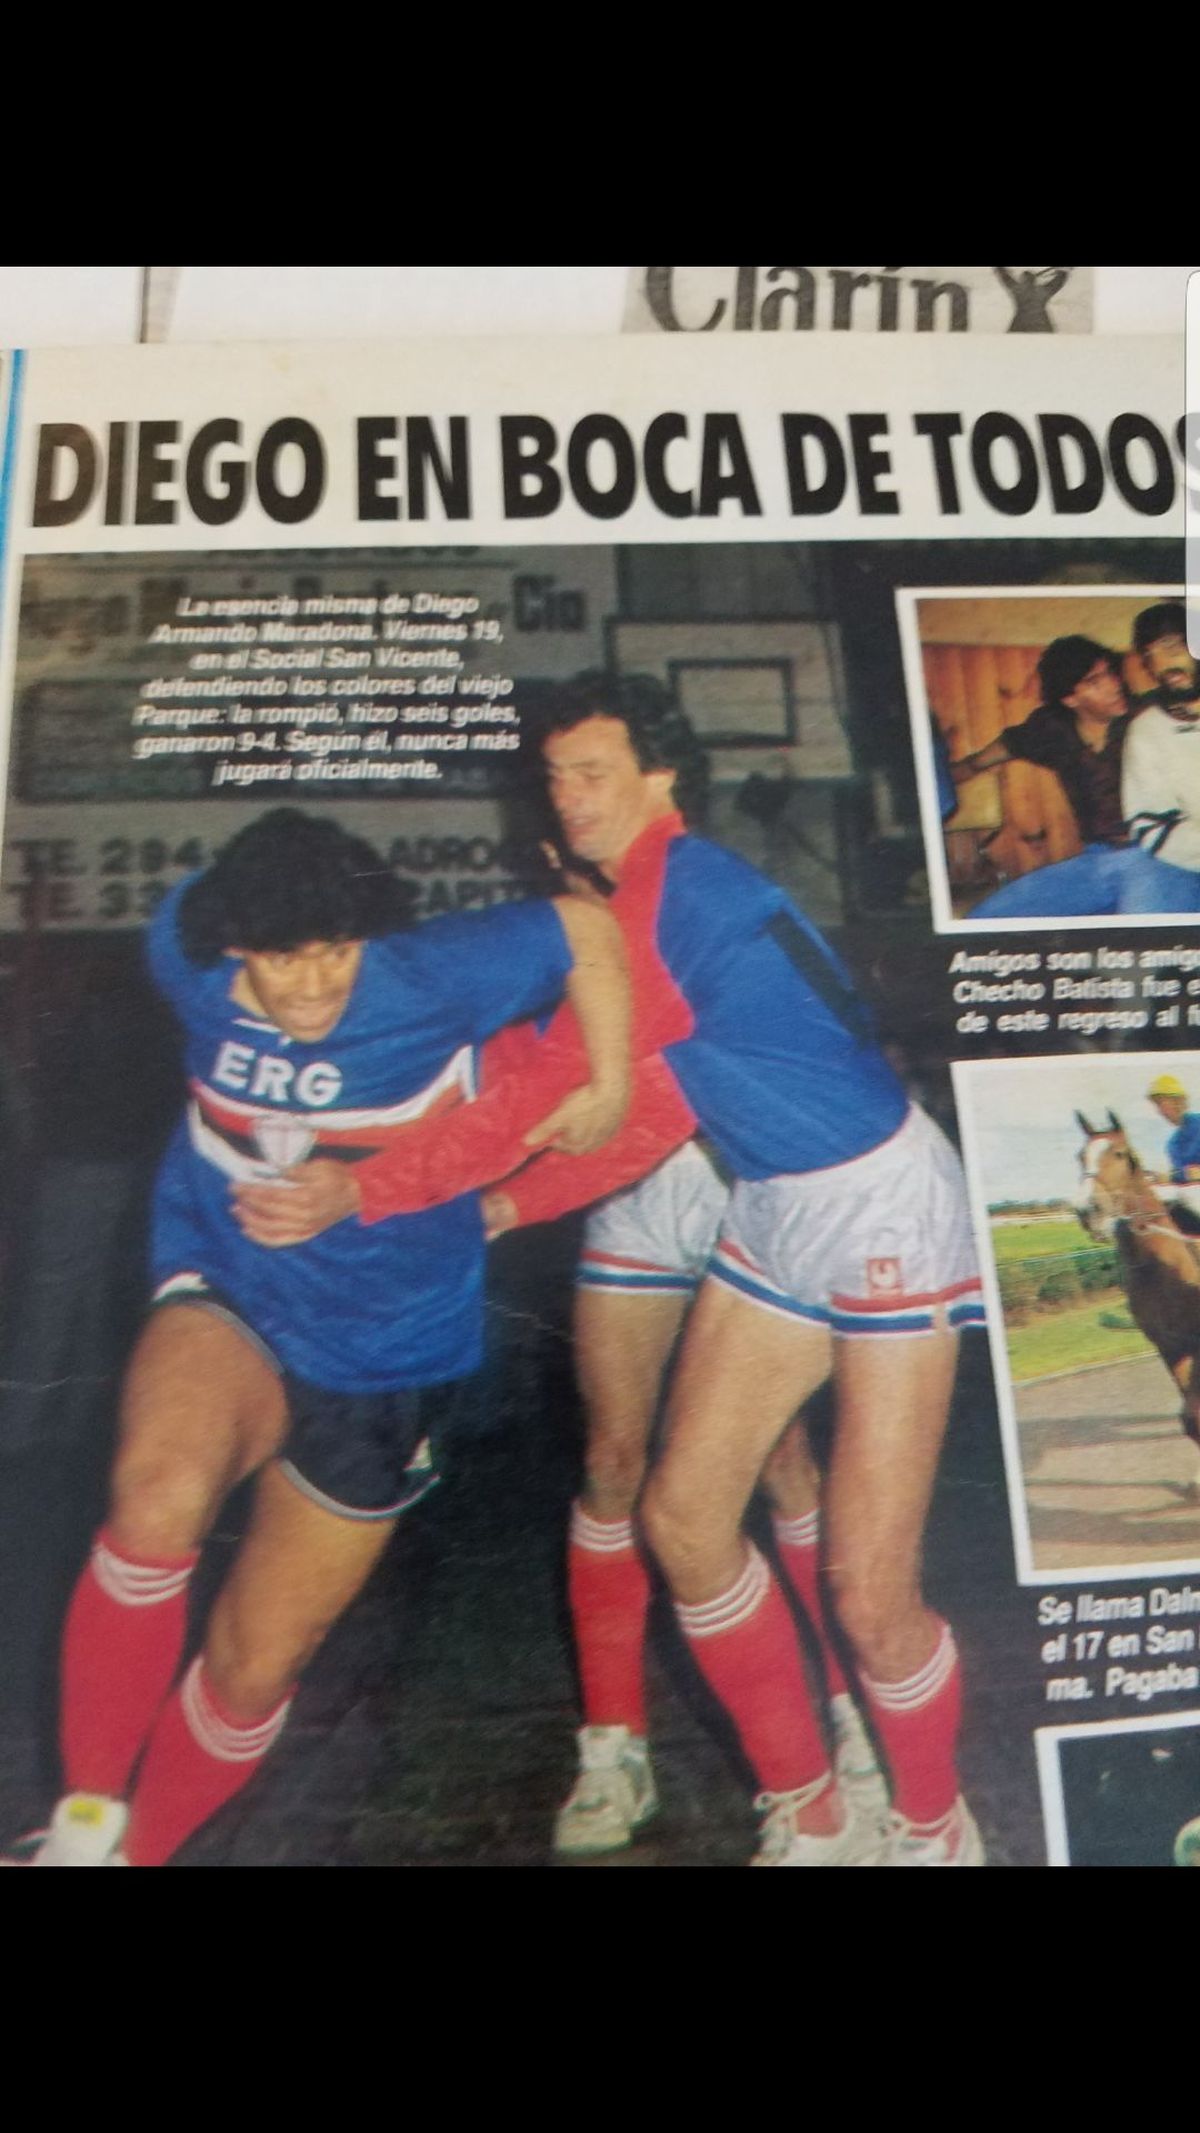 Tras el partido en el Club Deportivo, le dijo a El Gráfico que no volvería a jugar oficialmente y que se convertiría en un jugador amateur.